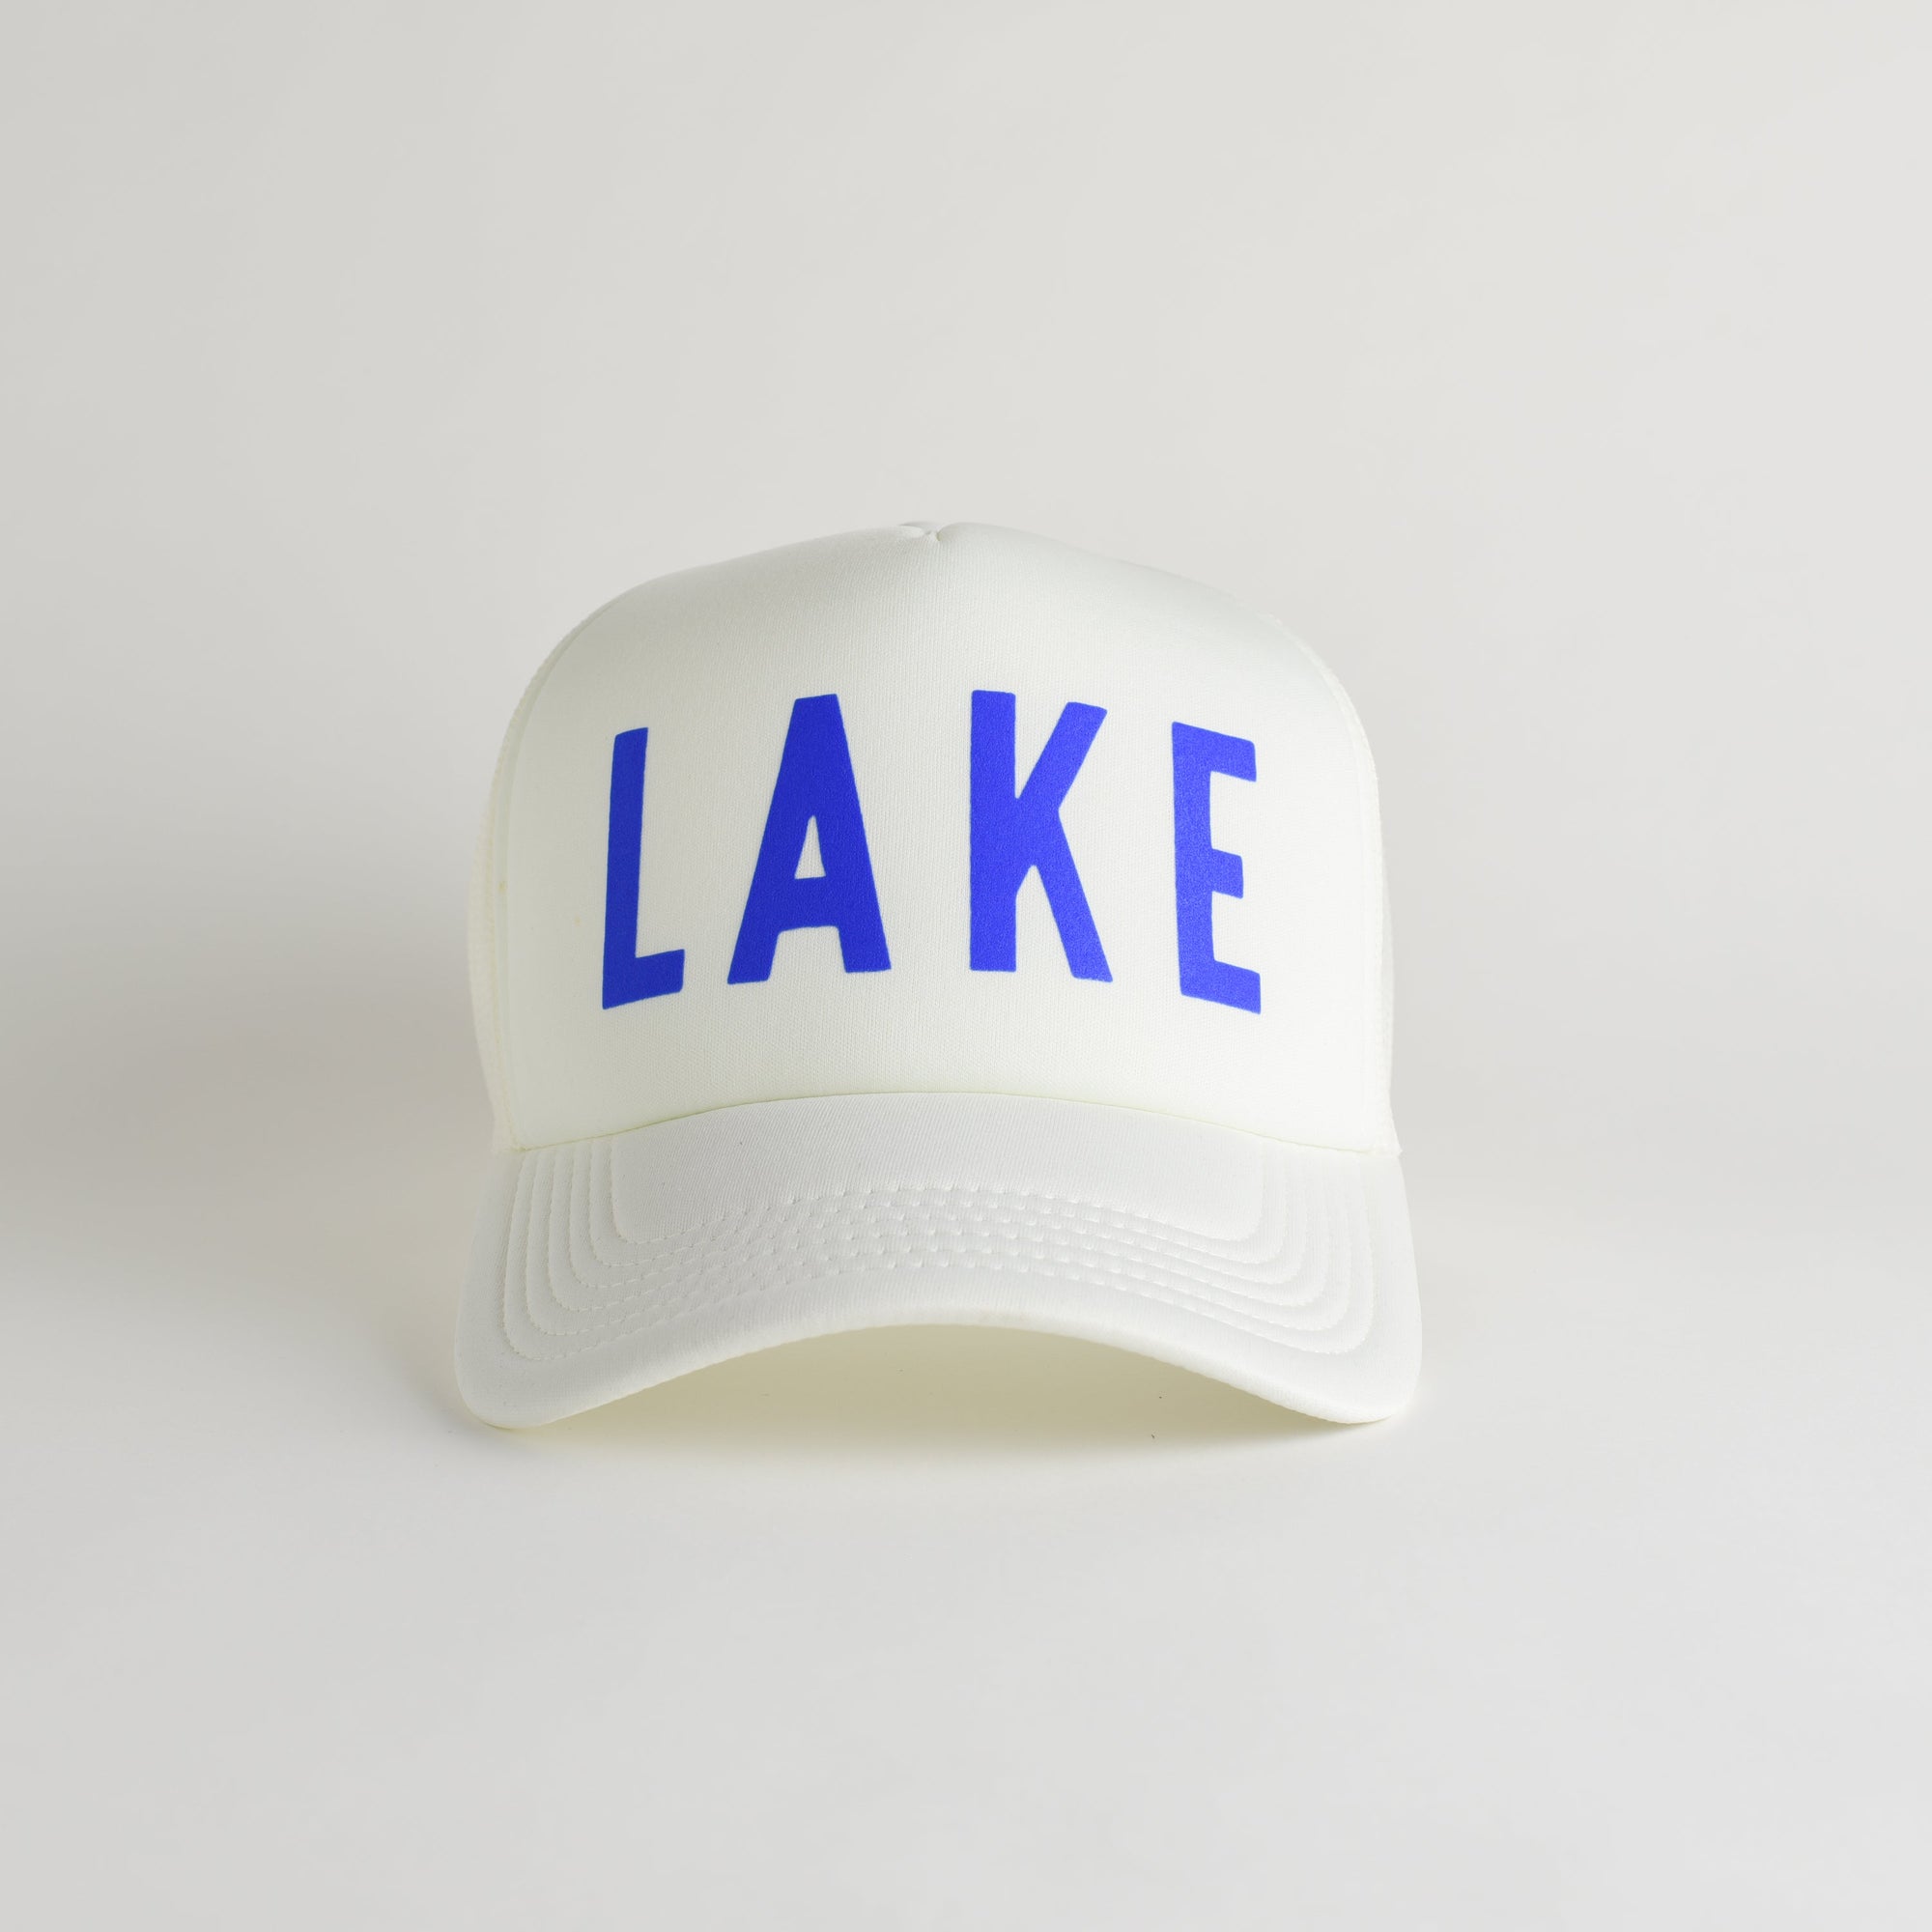 Lake Recycled Trucker Hat - ecru